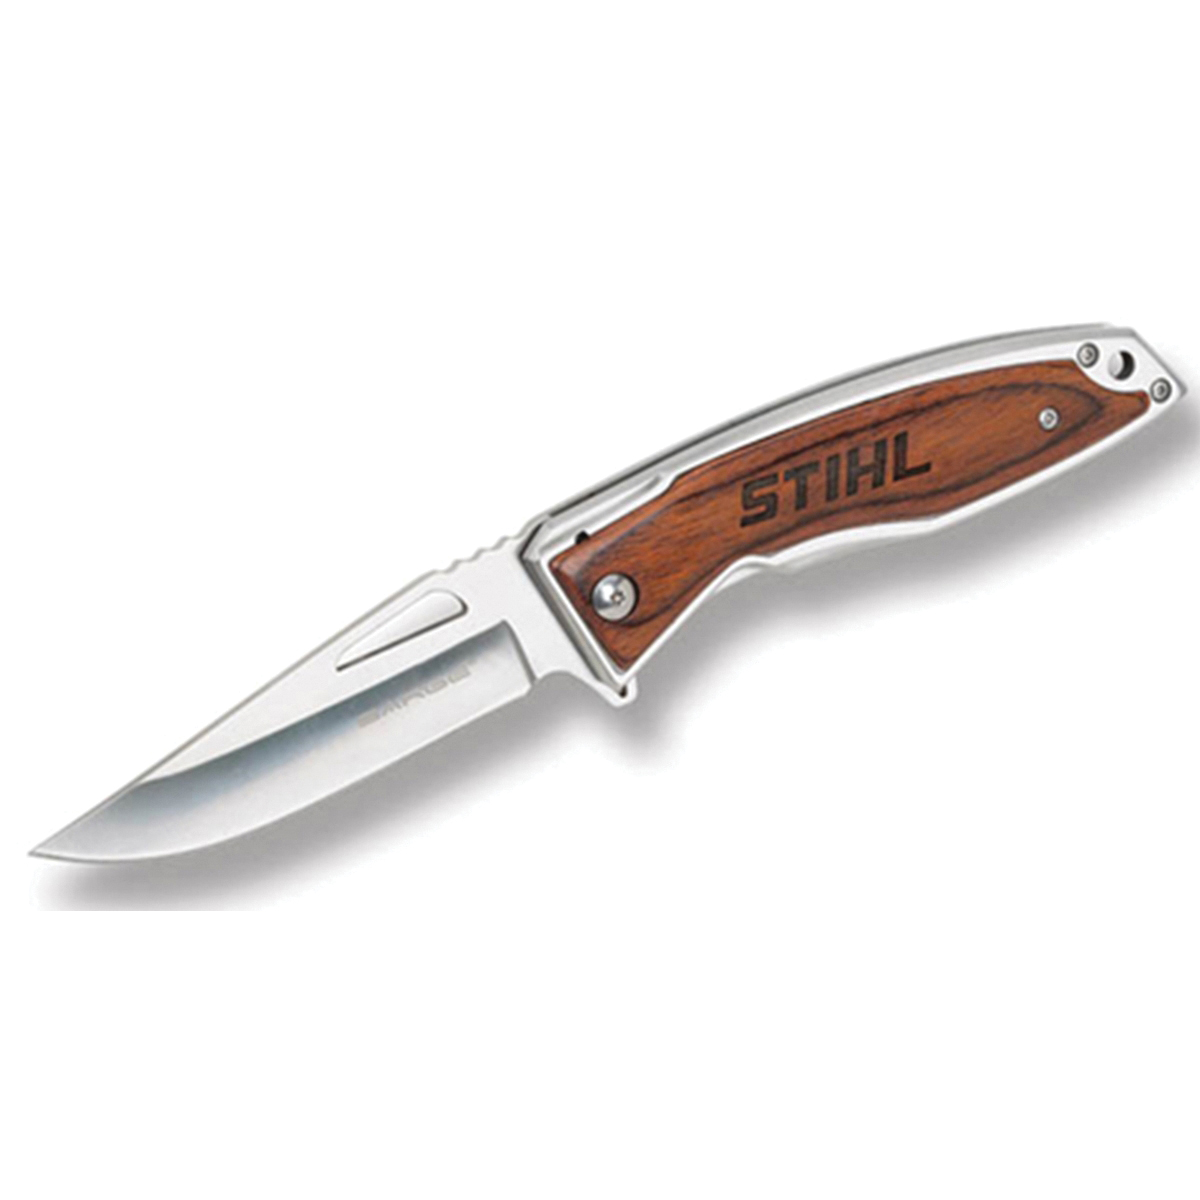 840136 Lockback Knife, 2 in L Blade, Stainless Steel Blade